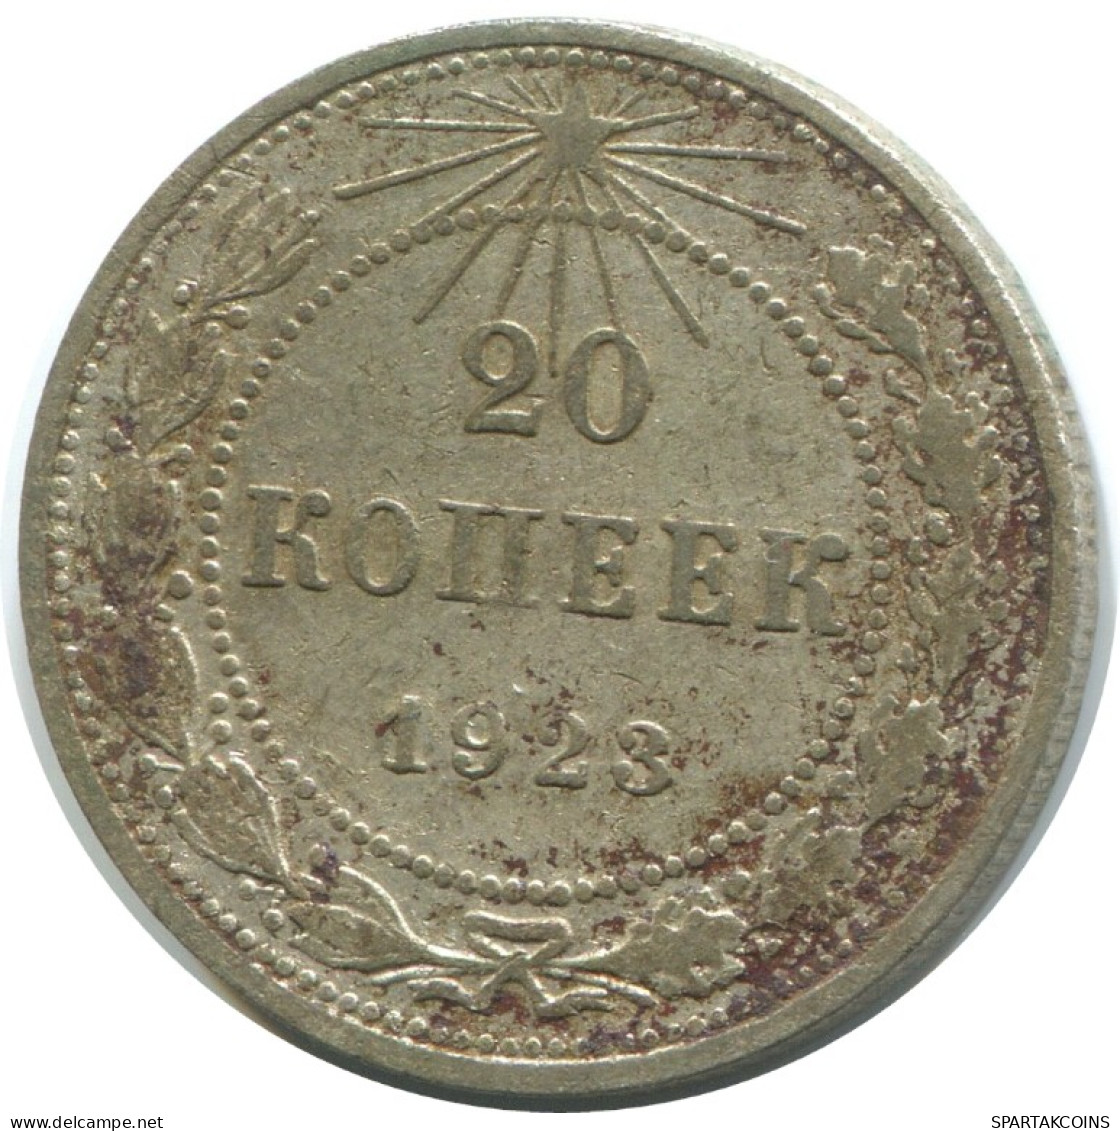 20 KOPEKS 1923 RUSSIA RSFSR SILVER Coin HIGH GRADE #AF526.4.U.A - Russland